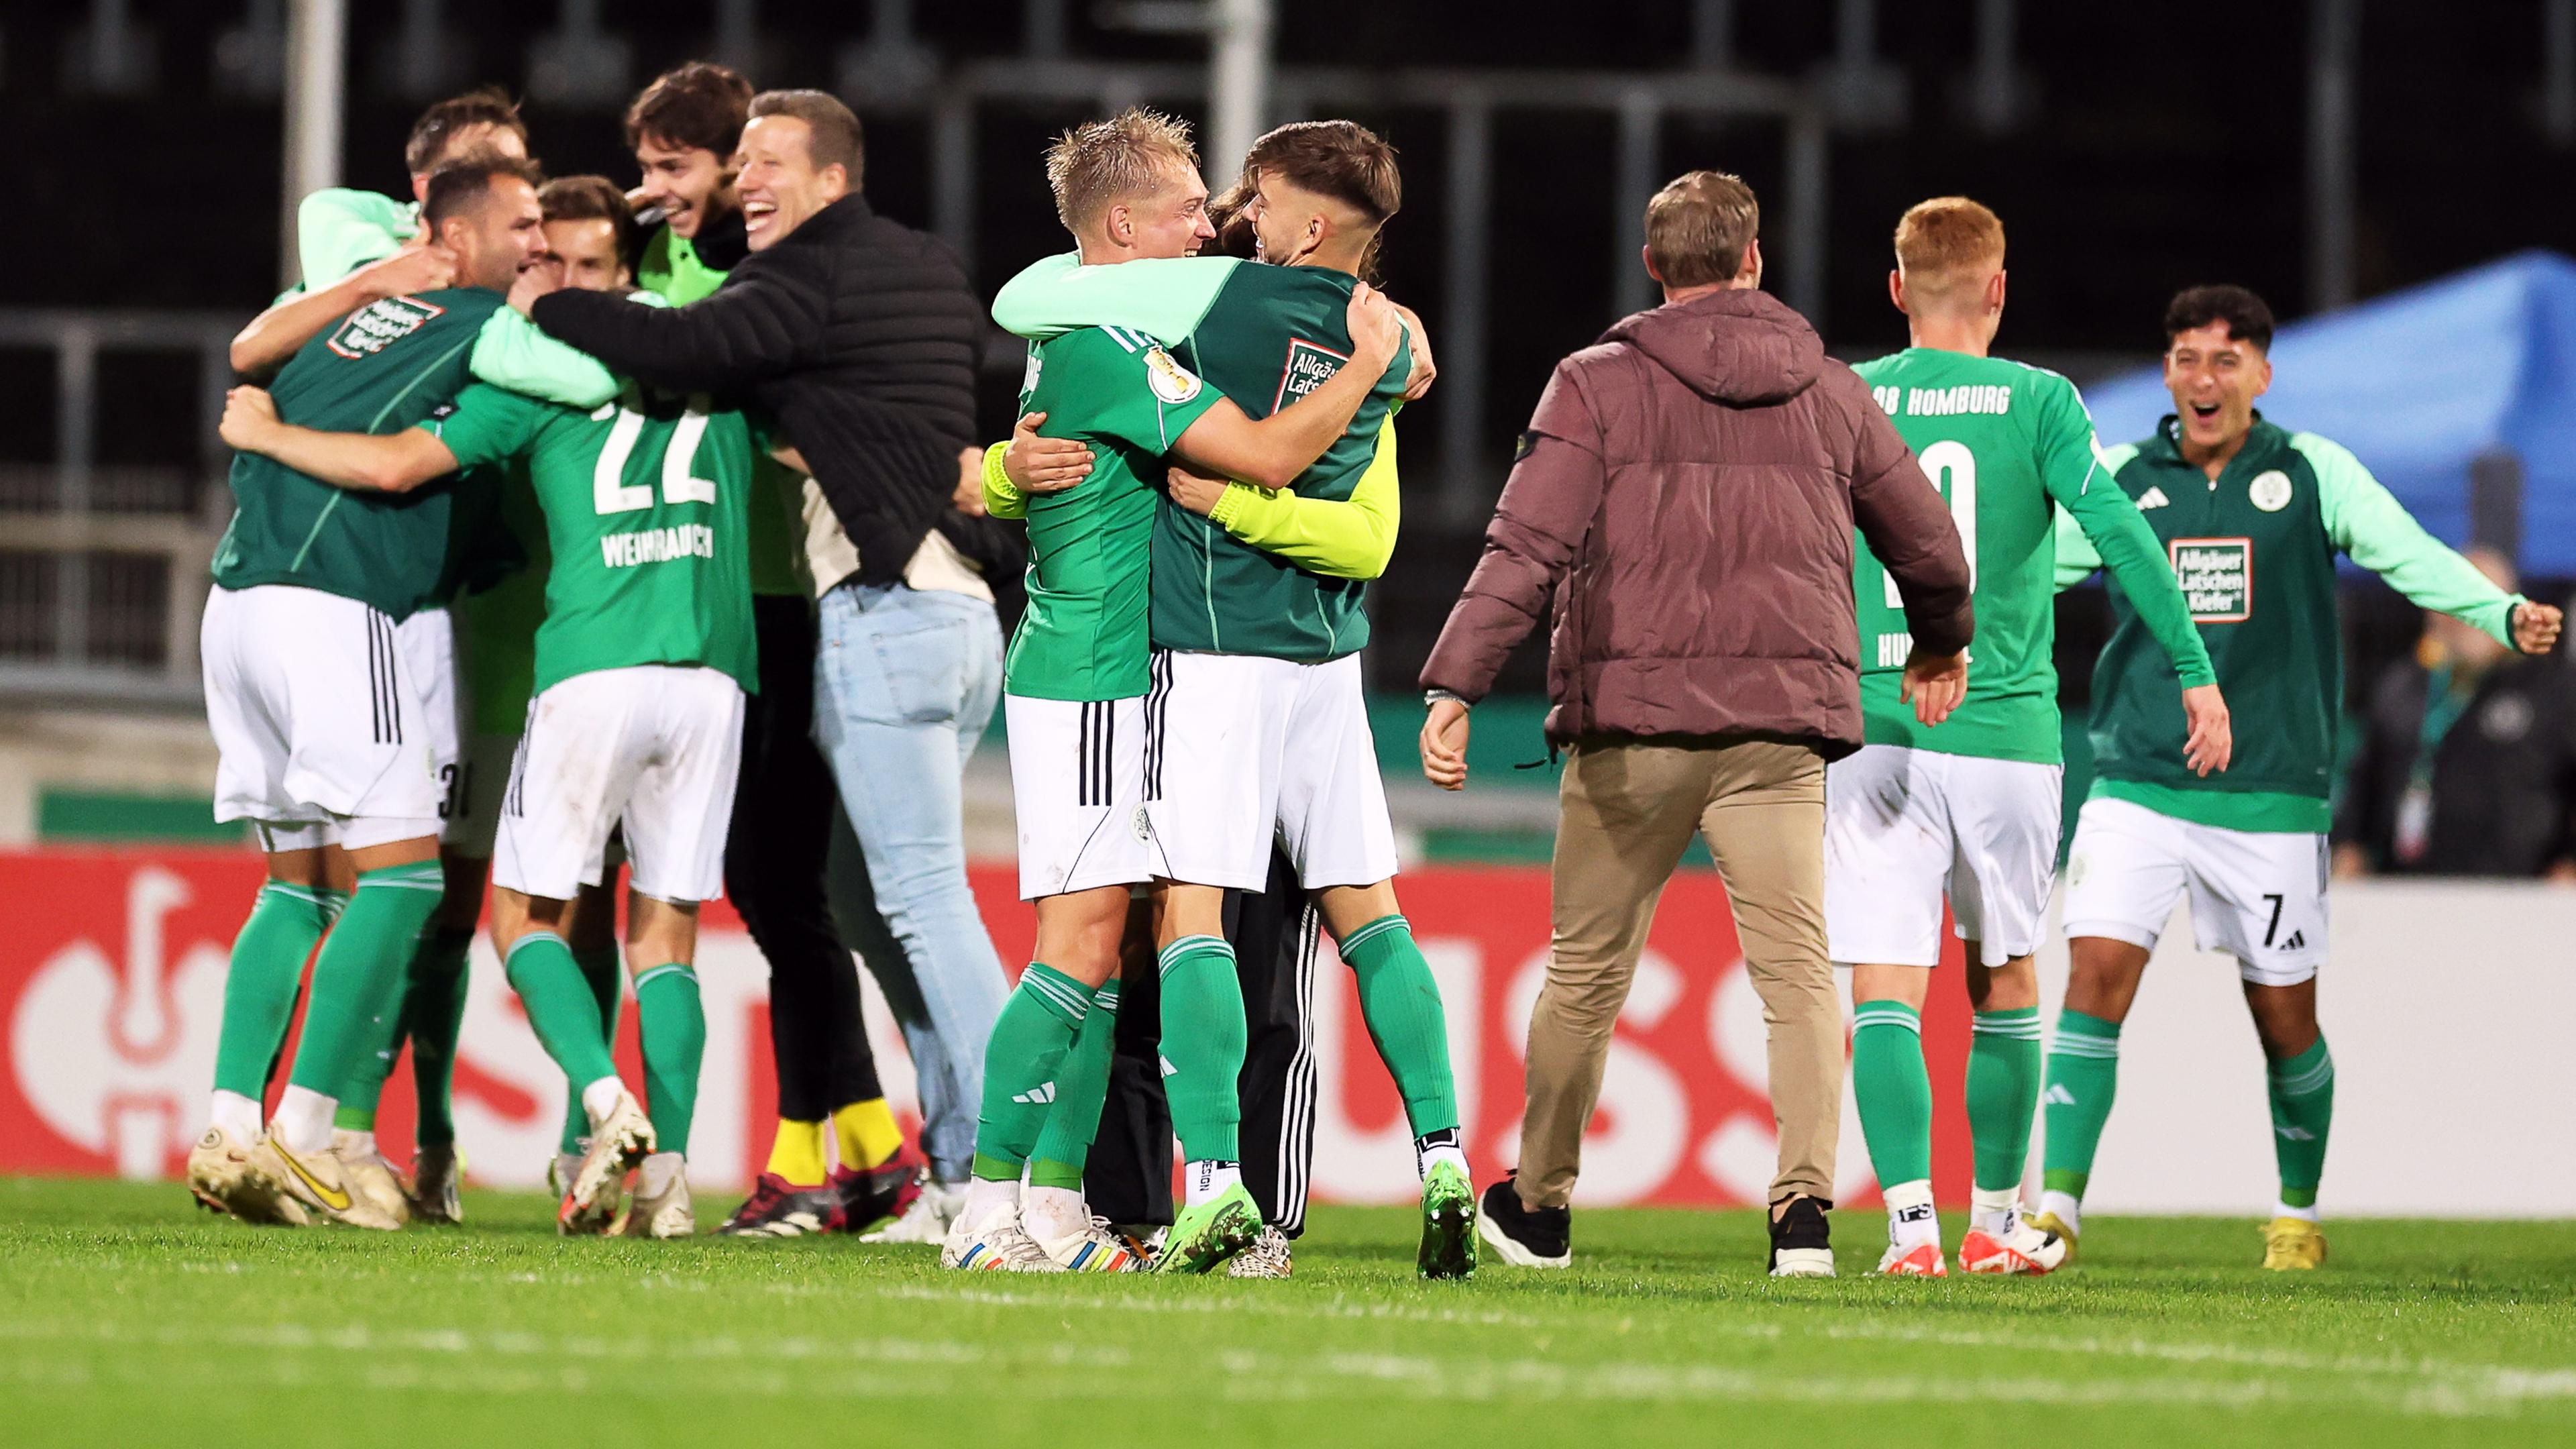 DFB-Pokal, FC Homburg - SpVgg Greuther Fürth, 2. Runde: Homburgs Spieler jubeln nach dem Sieg.